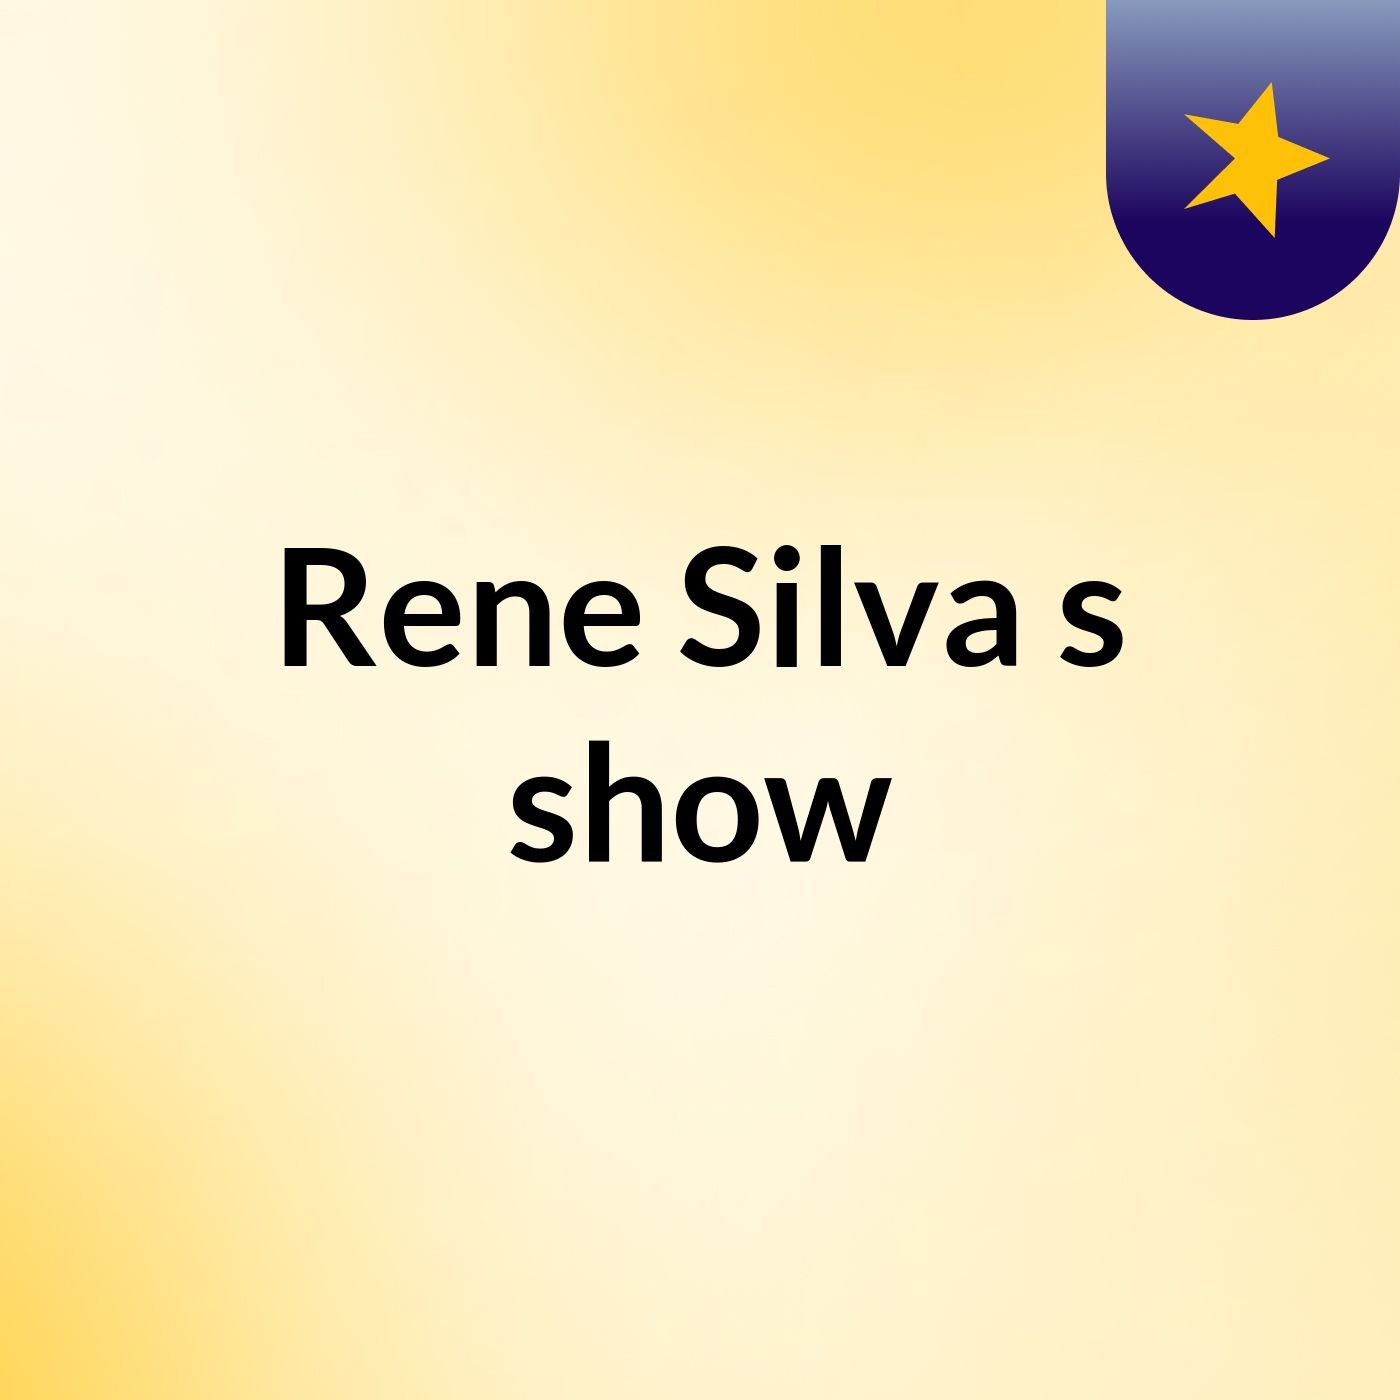 Rene Silva's show